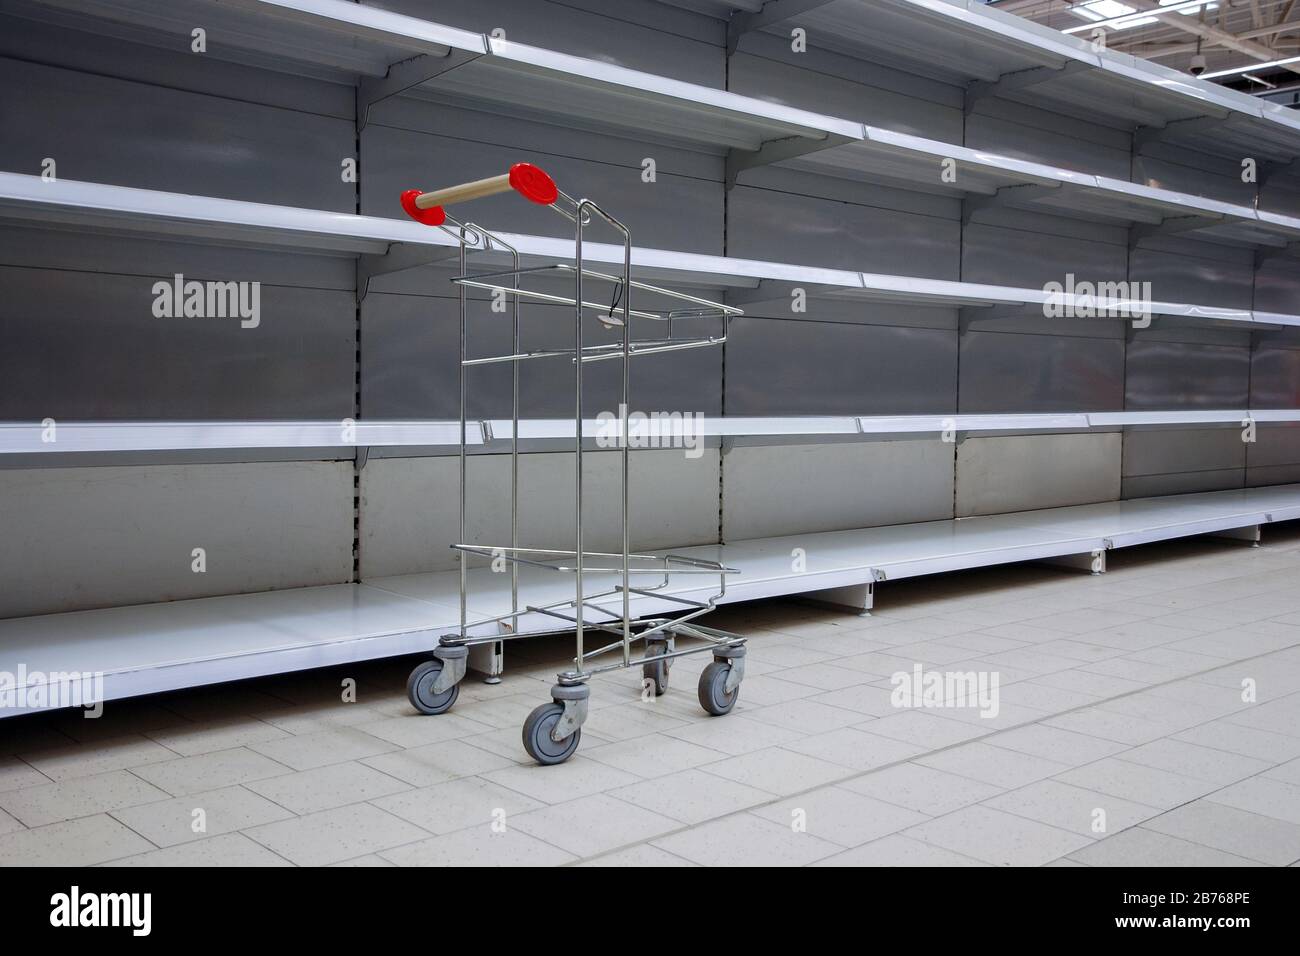 Leere Regale und Einkaufswagen im Supermarkt, alle ausverkauft wegen Panik durch Virusausbruch Stockfoto